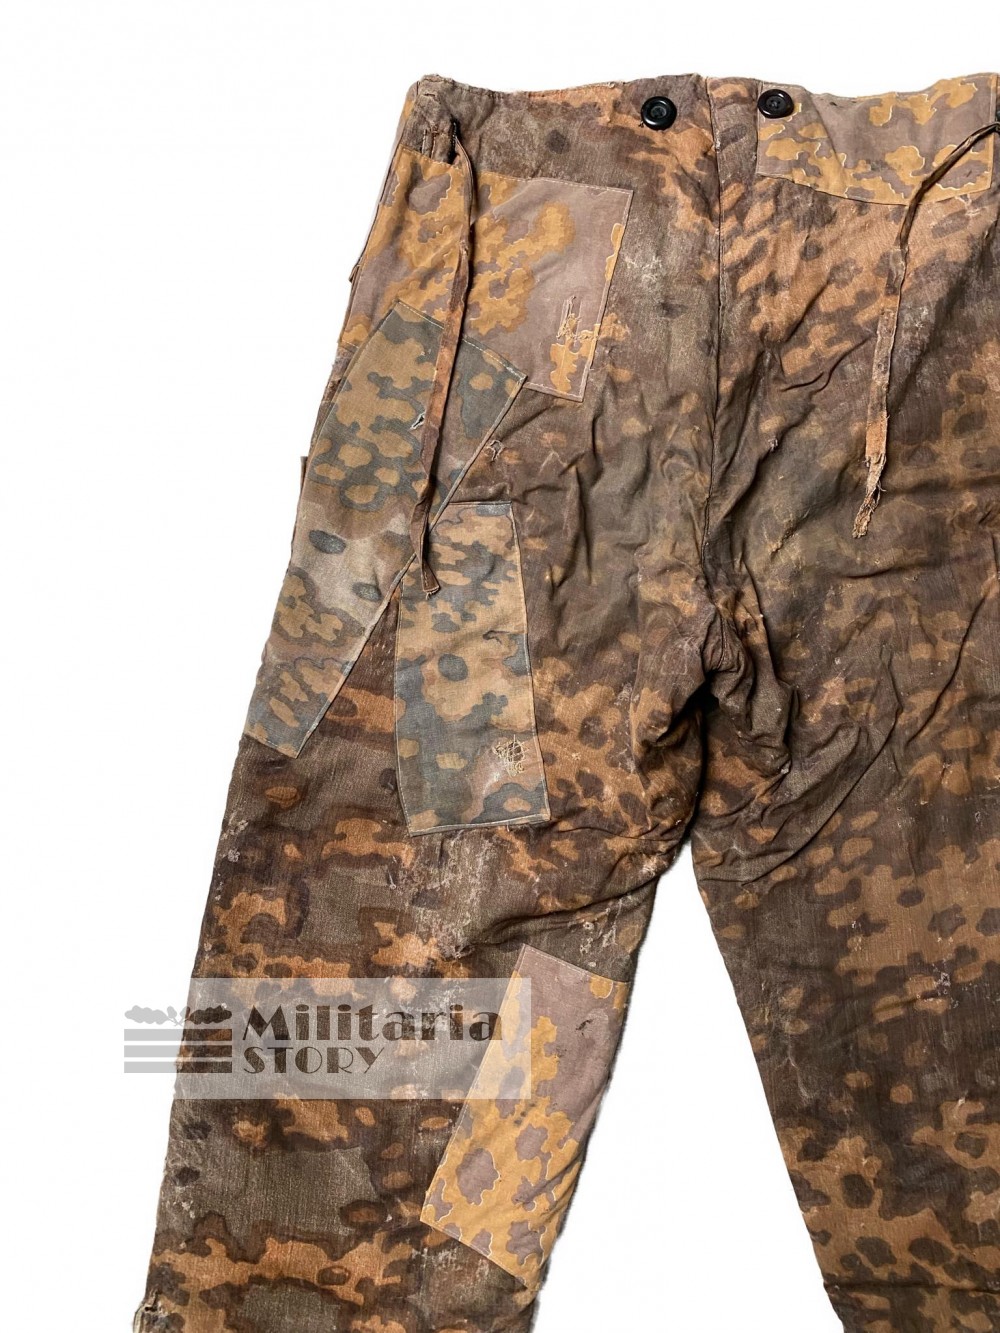 Waffen SS Autumn Oak Leaf trousers - Waffen SS Autumn Oak Leaf trousers: WW2 German Uniforms